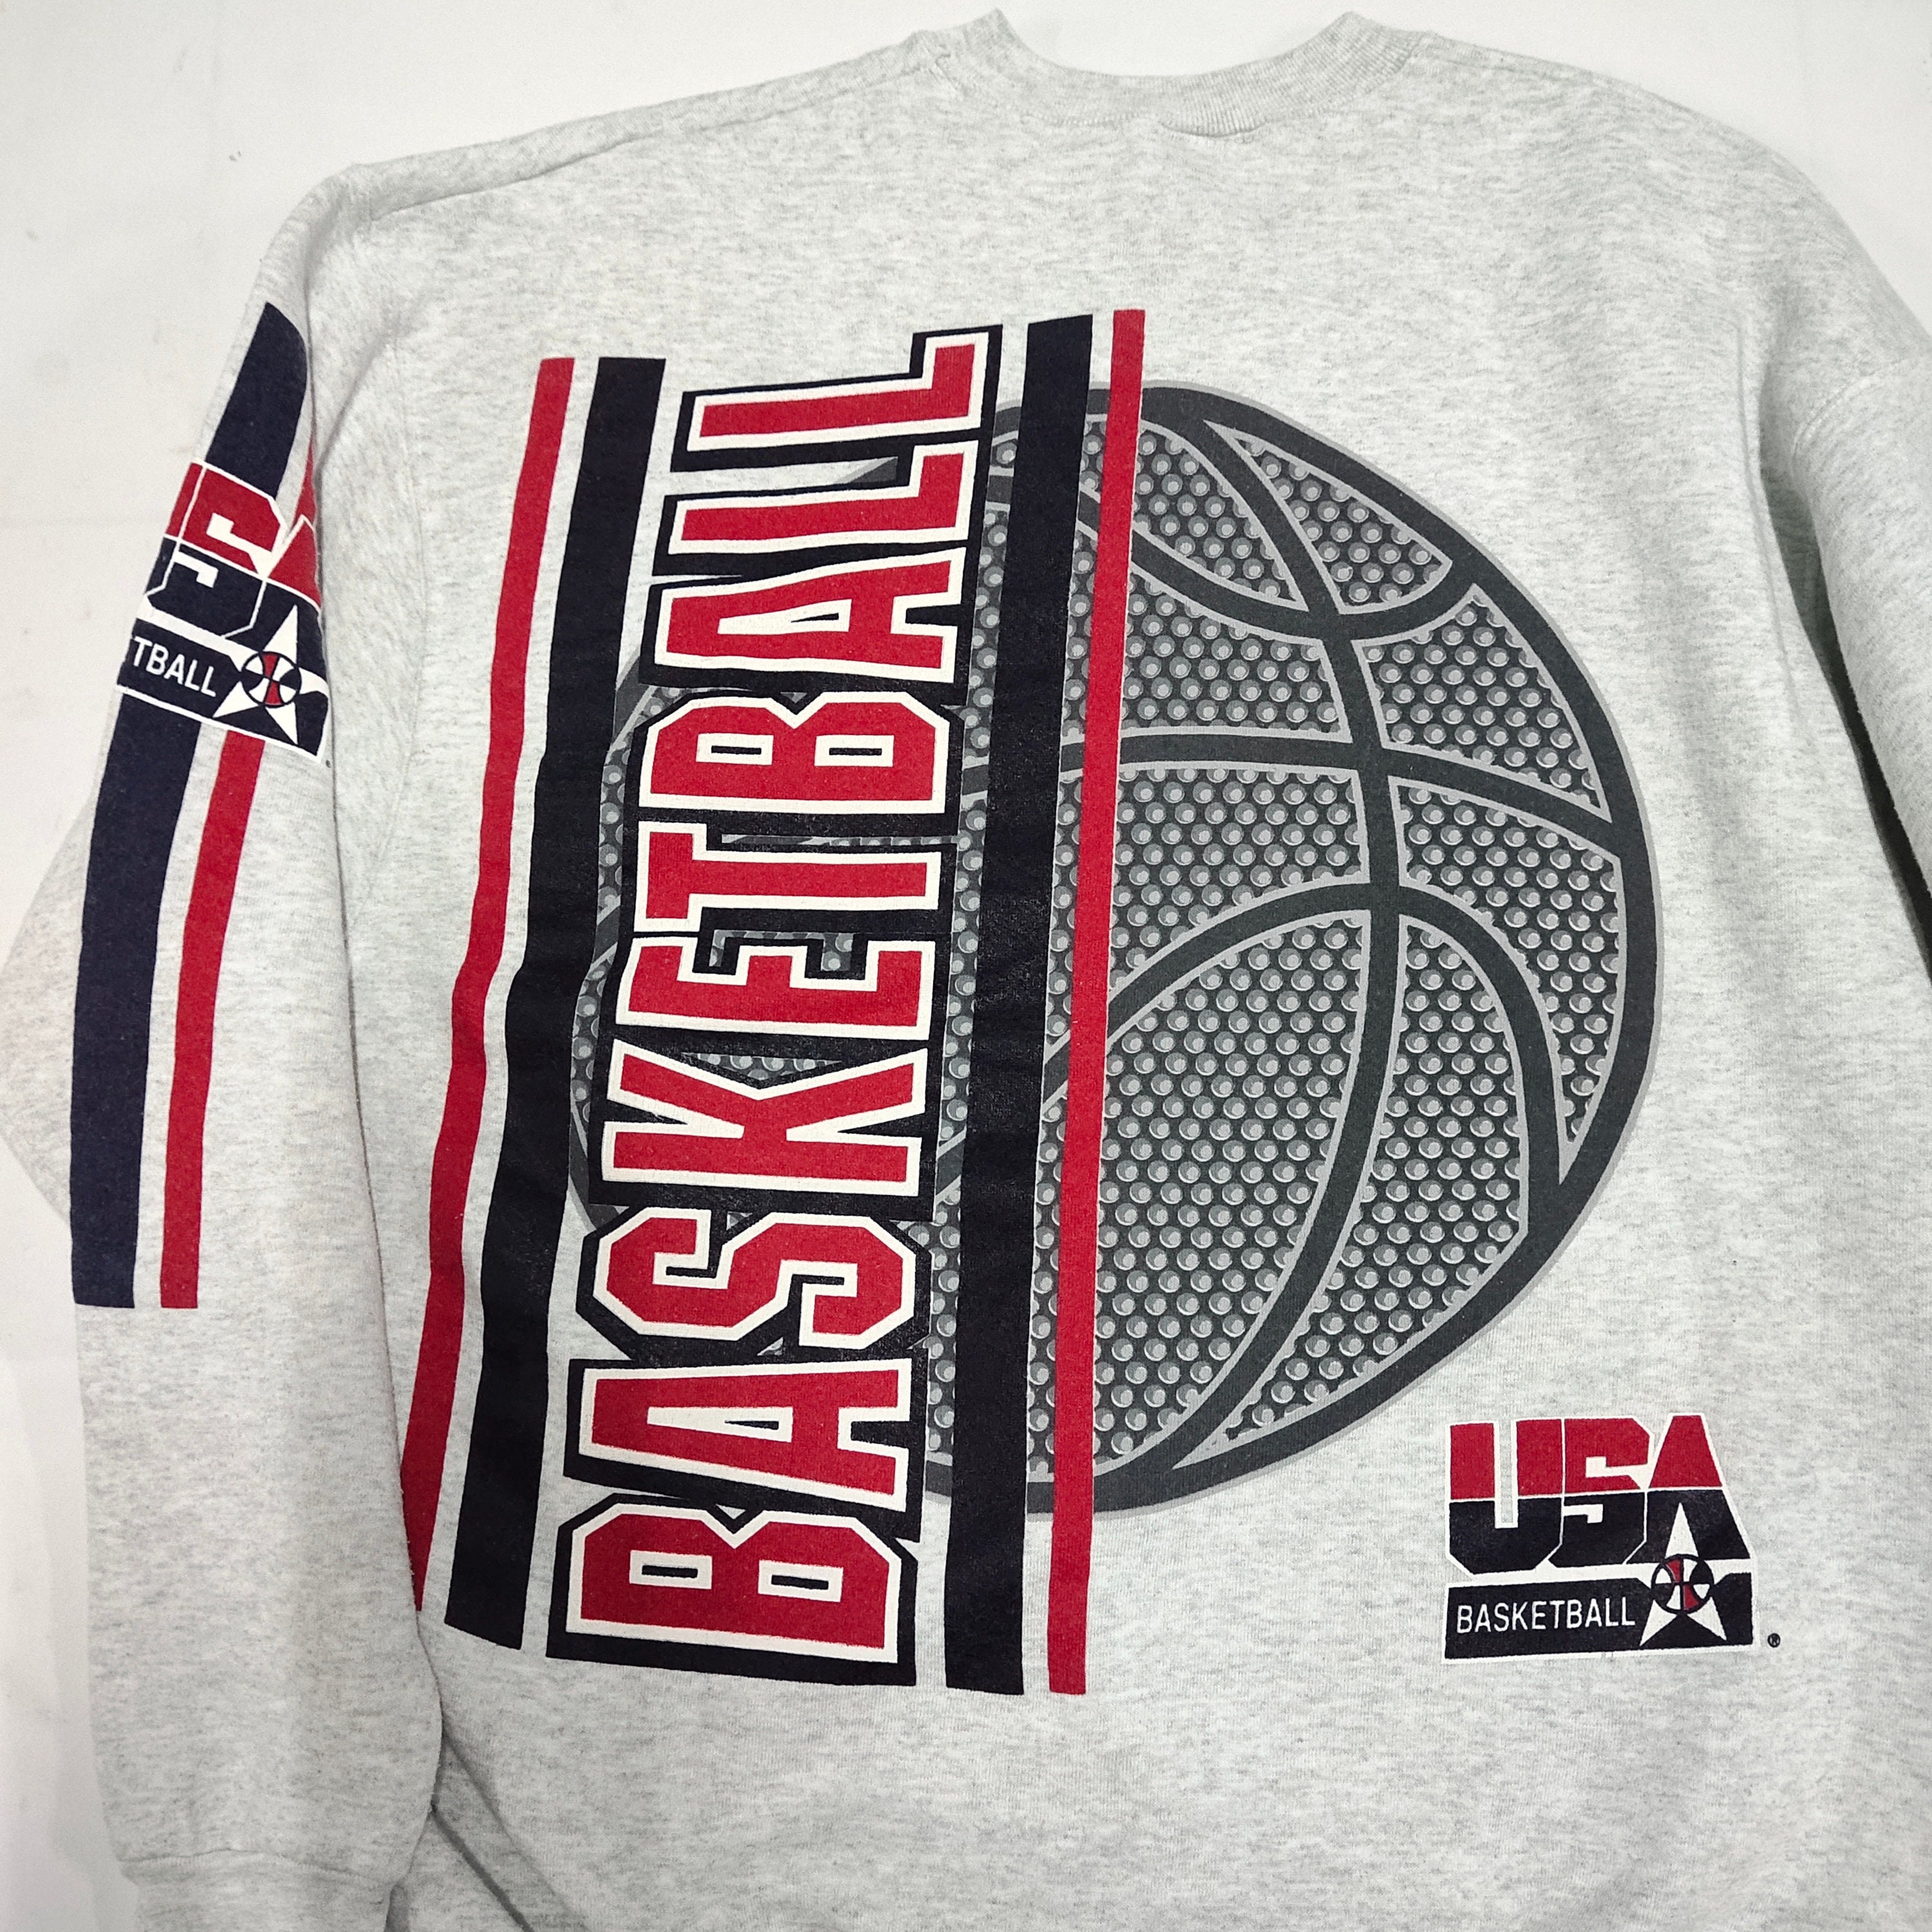 RARE Vintage 90s NBA USA Basketball Americas Team by Salem 